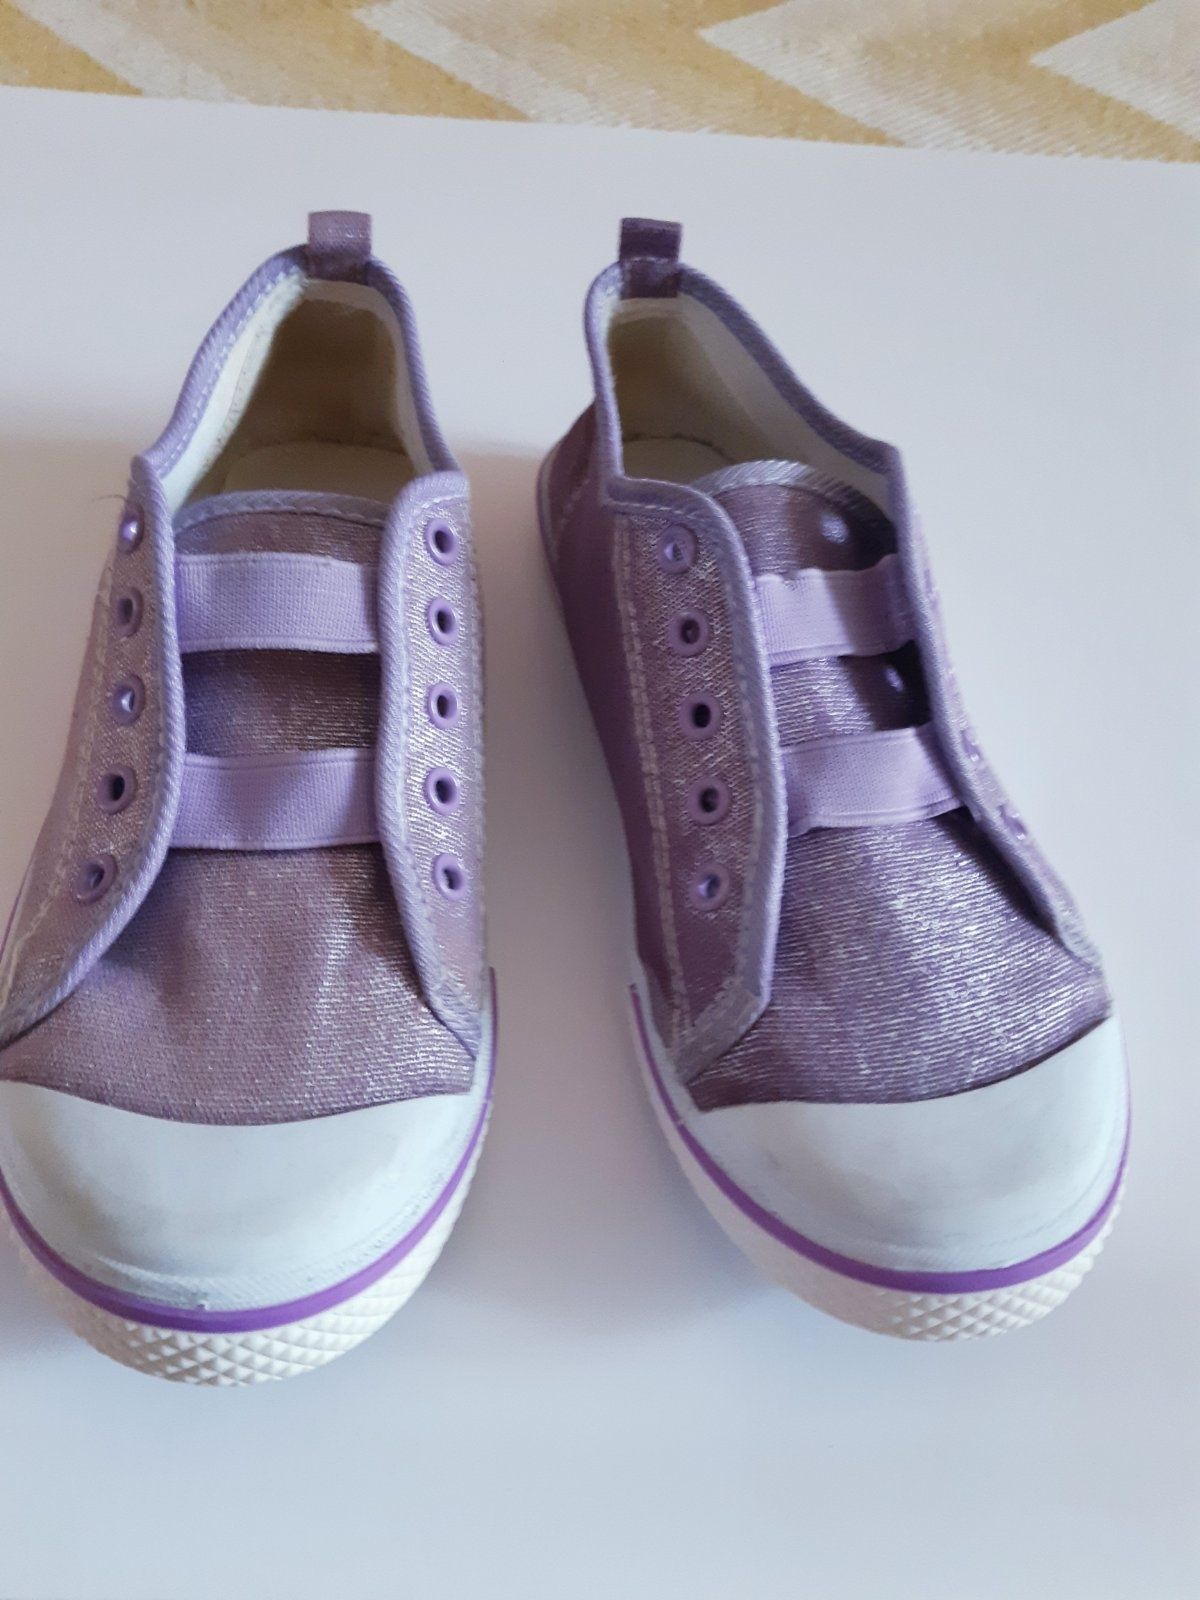 Кеды макасины слипоны туфли летние детские, для девочки. Фирма Arial,